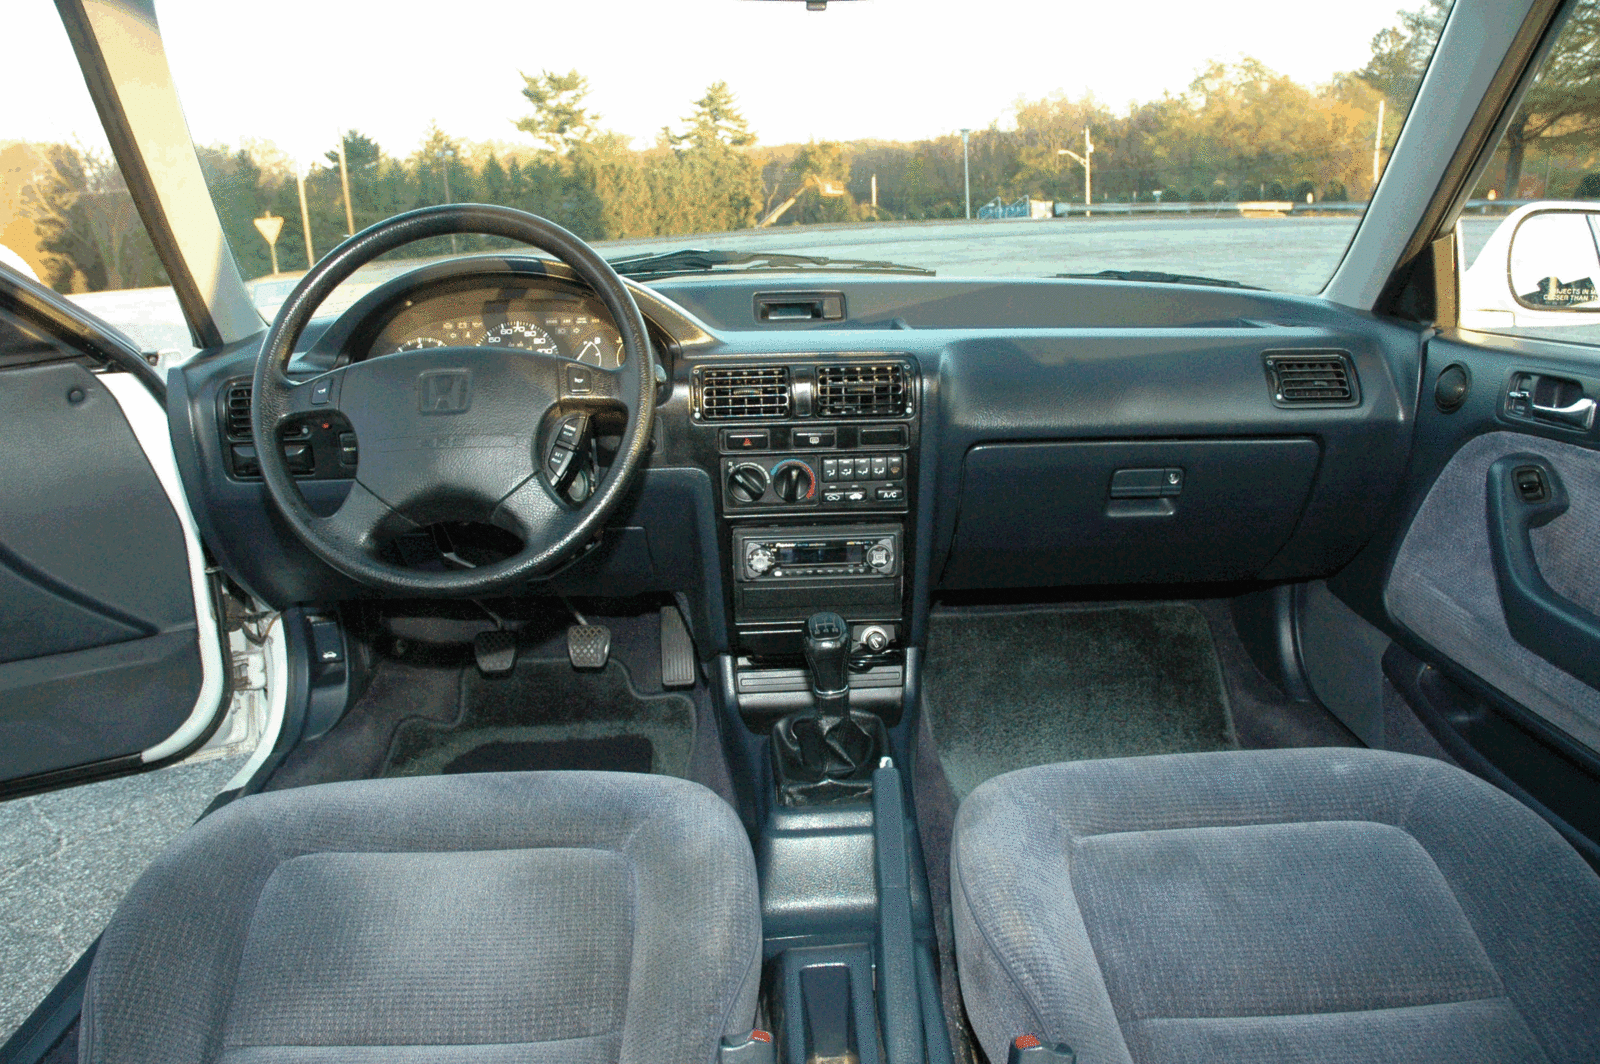 1992 Honda accord interior pictures #3